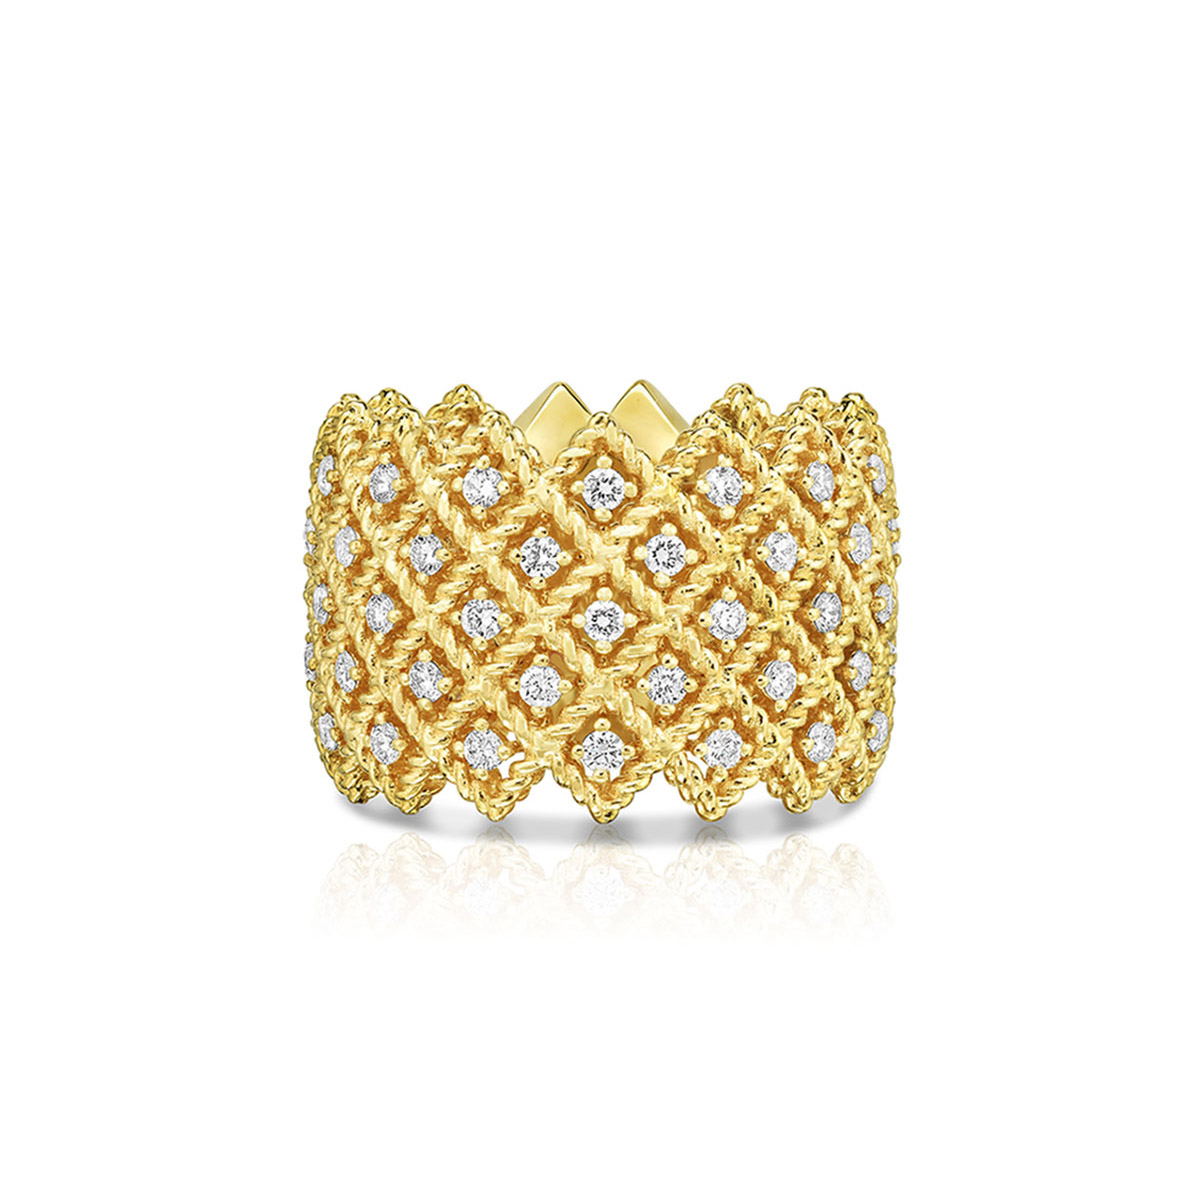 Grossisterbjudande anpassade OEM/ODM-smycken Femradsring med diamanter i designsmycken i 18K gult guld